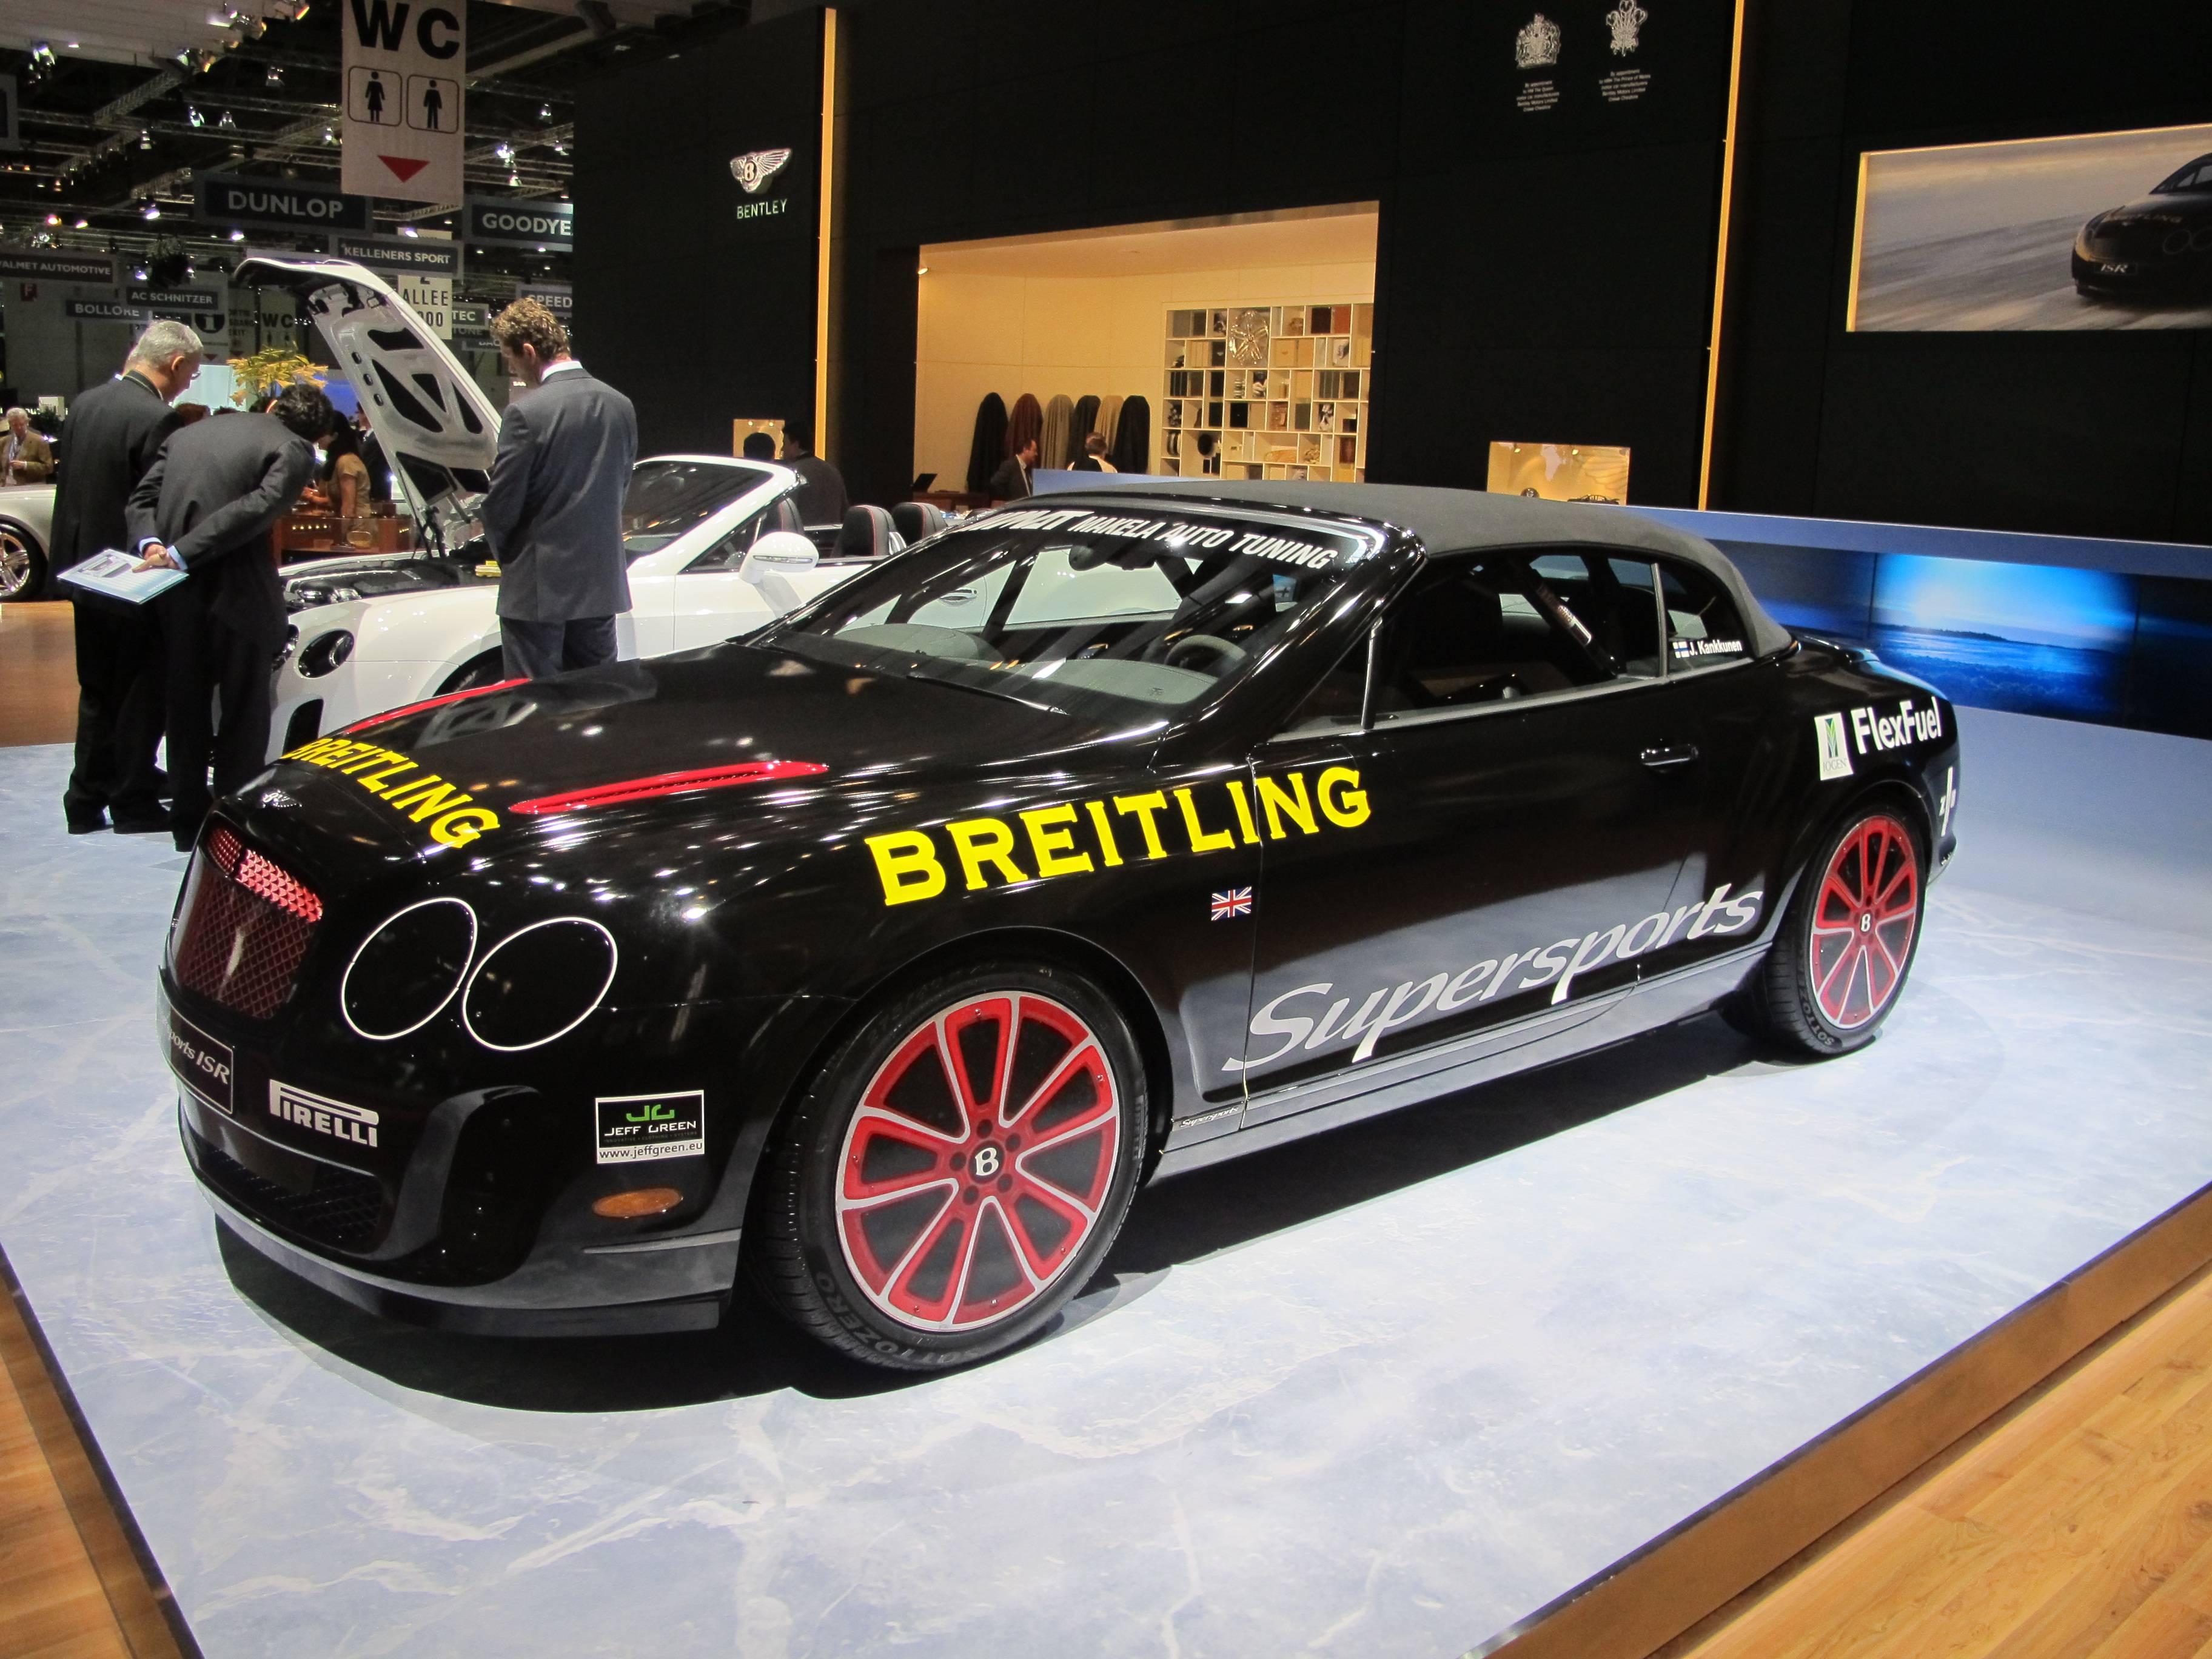 Geneva Motor Show - Bentley's Ice Record Breaking GTC